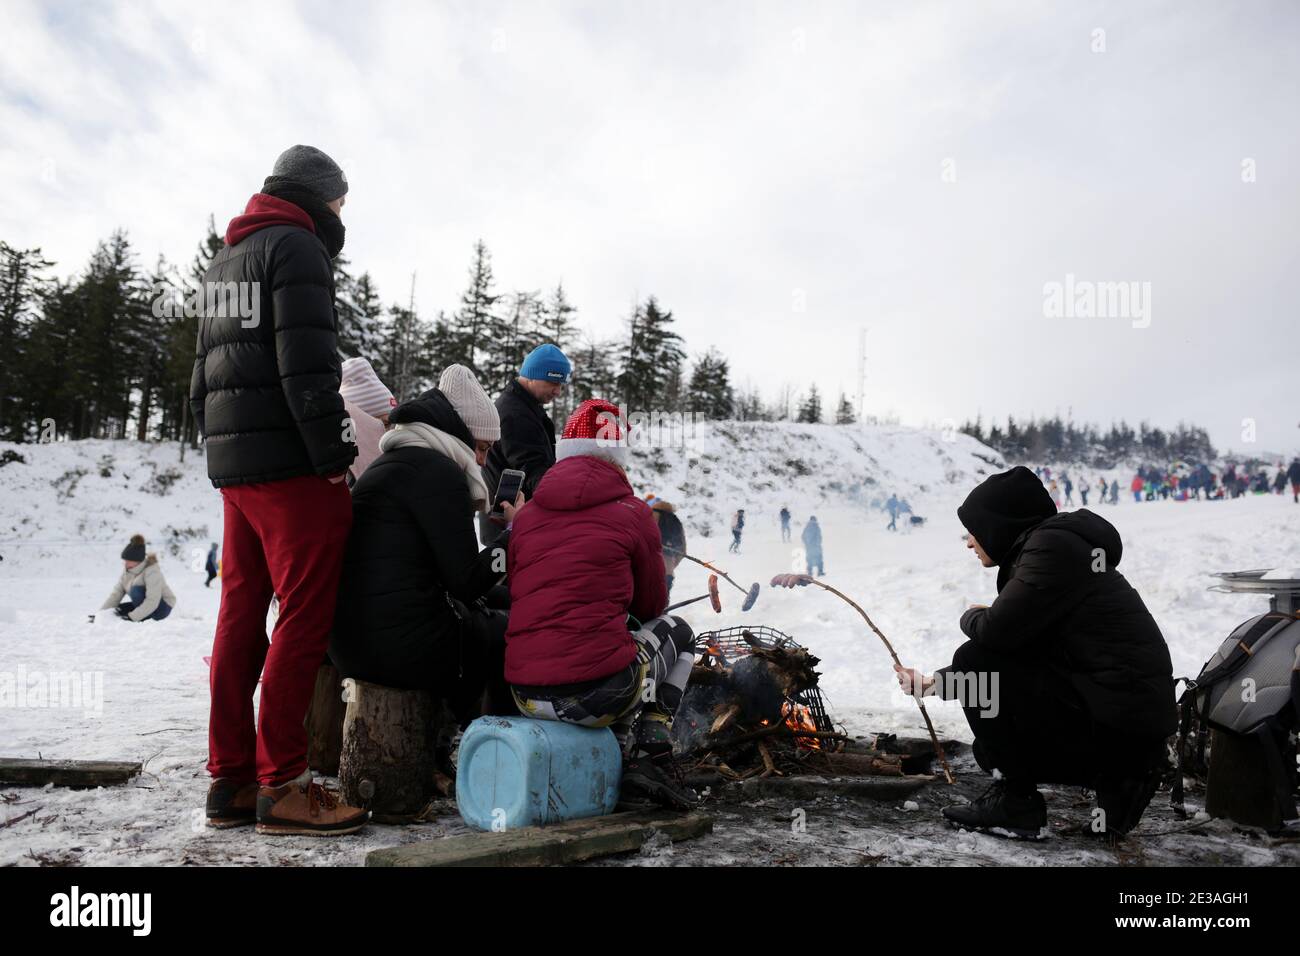 Skrzyczne, Pologne - janvier 17,2021 : personnes se détendant dans les Beskids silésiens, sur Skrzyczne et les pistes de ski et de luge environnantes. Banque D'Images